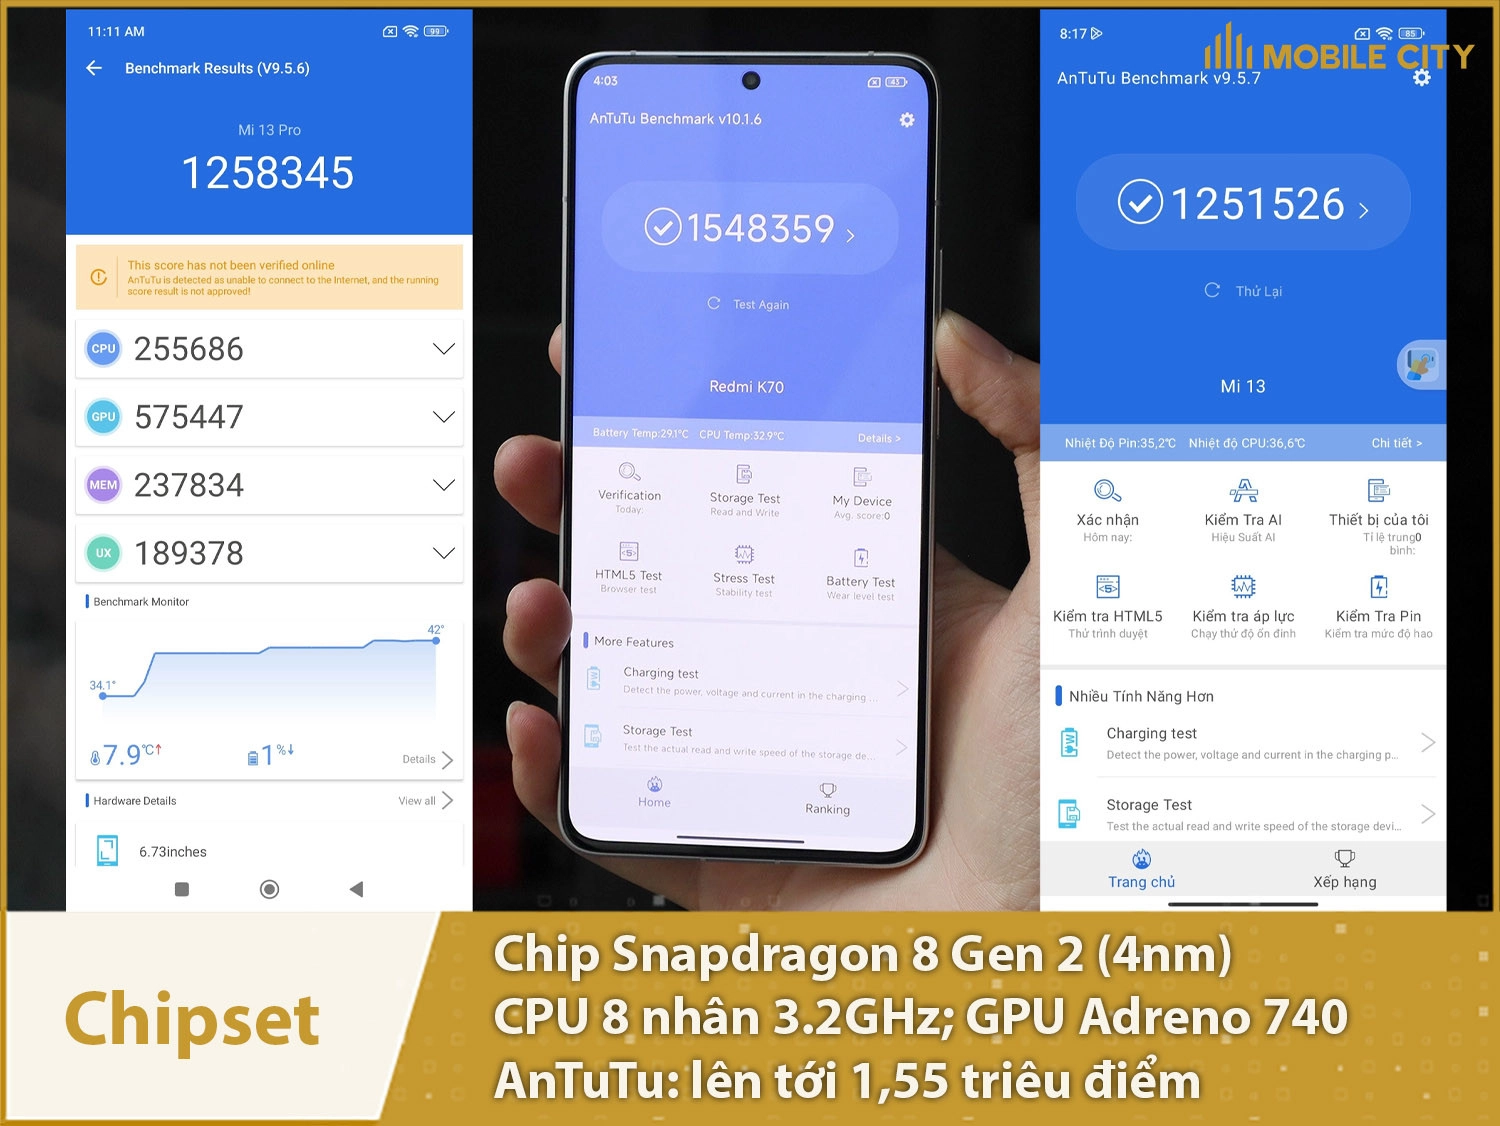 Chip Snapdragon 8 Gen 2 với 1,55 triệu điểm AnTuTu